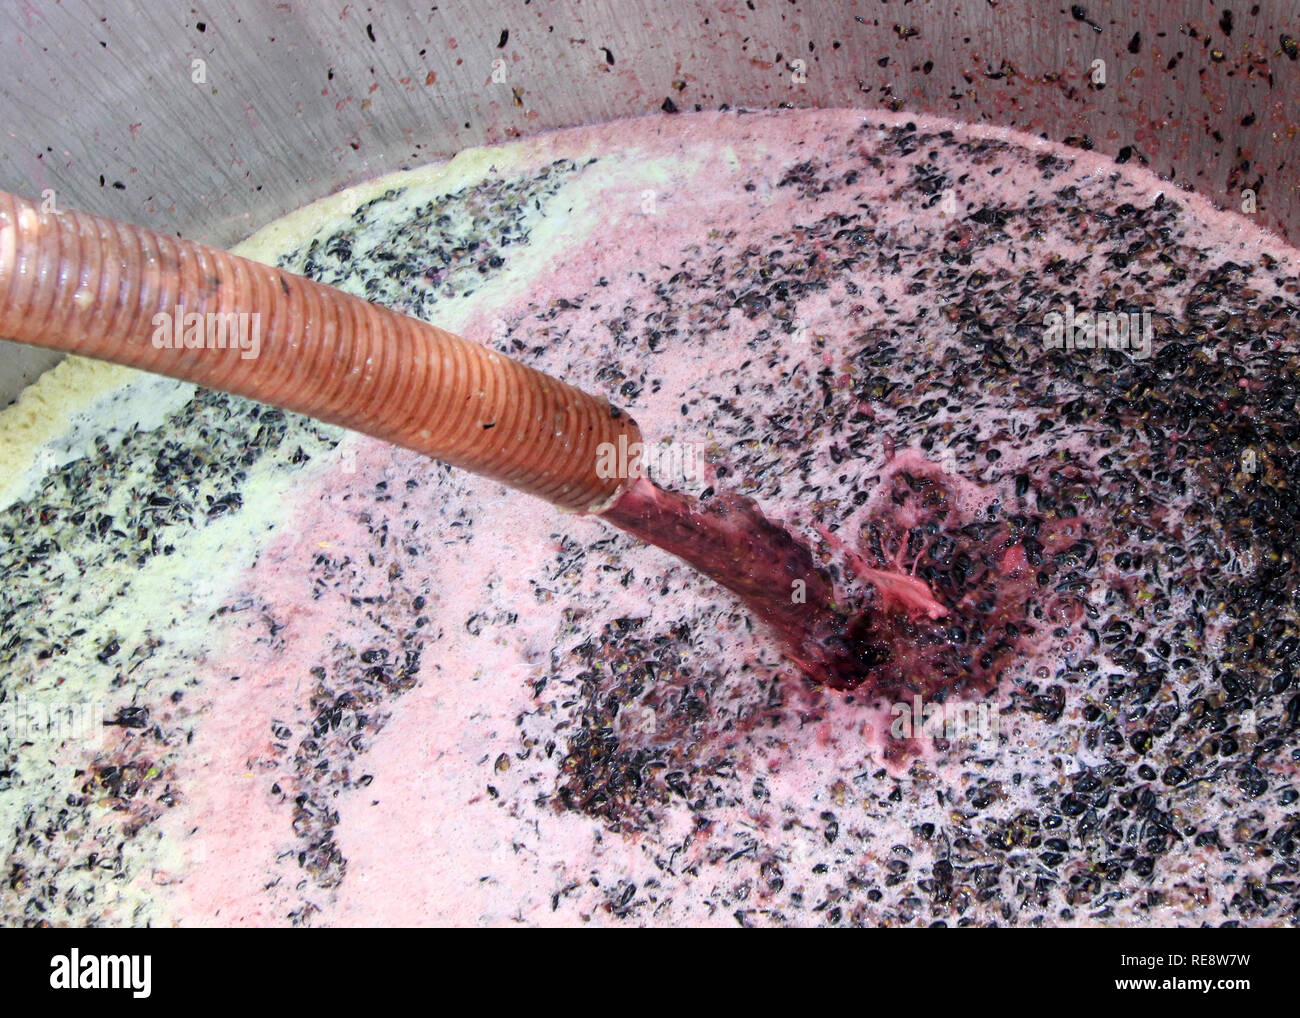 Süße rot-roten Wein, Traubenmost (Saft, Skins, und Samen) strömt von der Brecher/de-stemer in einen Fermentierungsbehälter gefüllt. Sonoma County, CA, USA Stockfoto